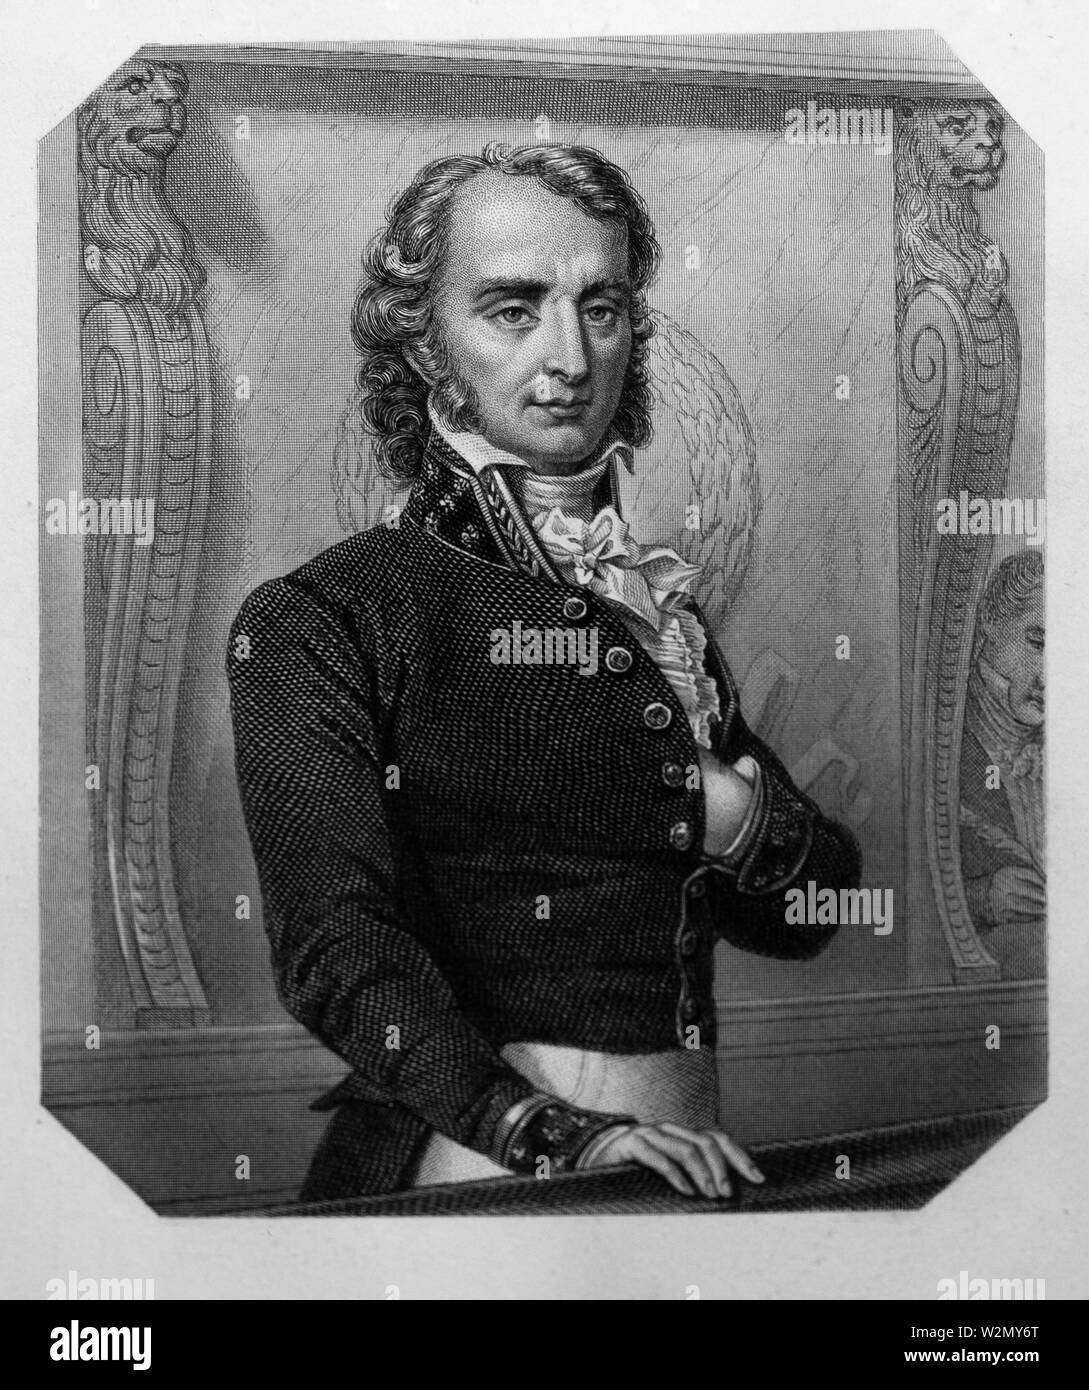 Benjamin Constant de Rebecque.Henri-Benjamin constante ( 25 de octubre de 1767 - 8 de diciembre de 1830), o simplemente por Benjamin Constant, fue un político francés de Suiza Foto de stock